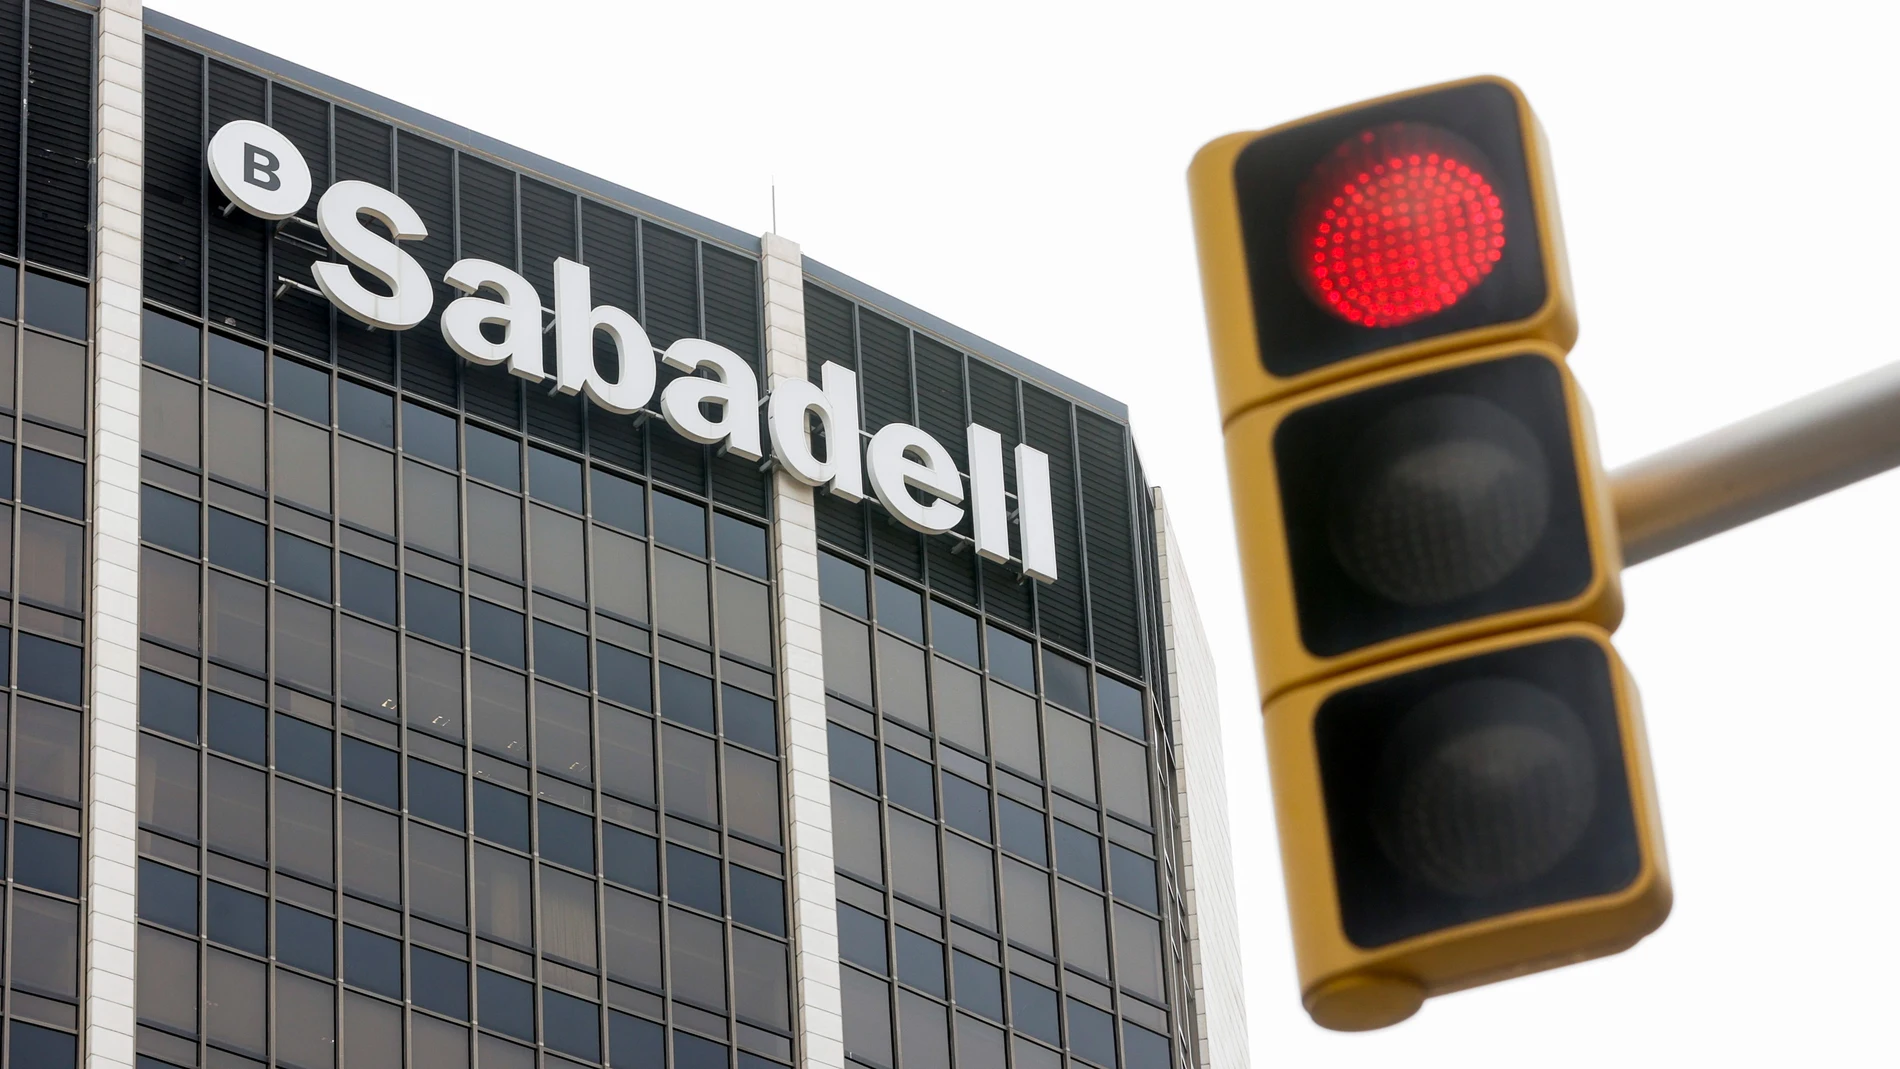 Sede corporativa en Barcelona del Banco Sabadell